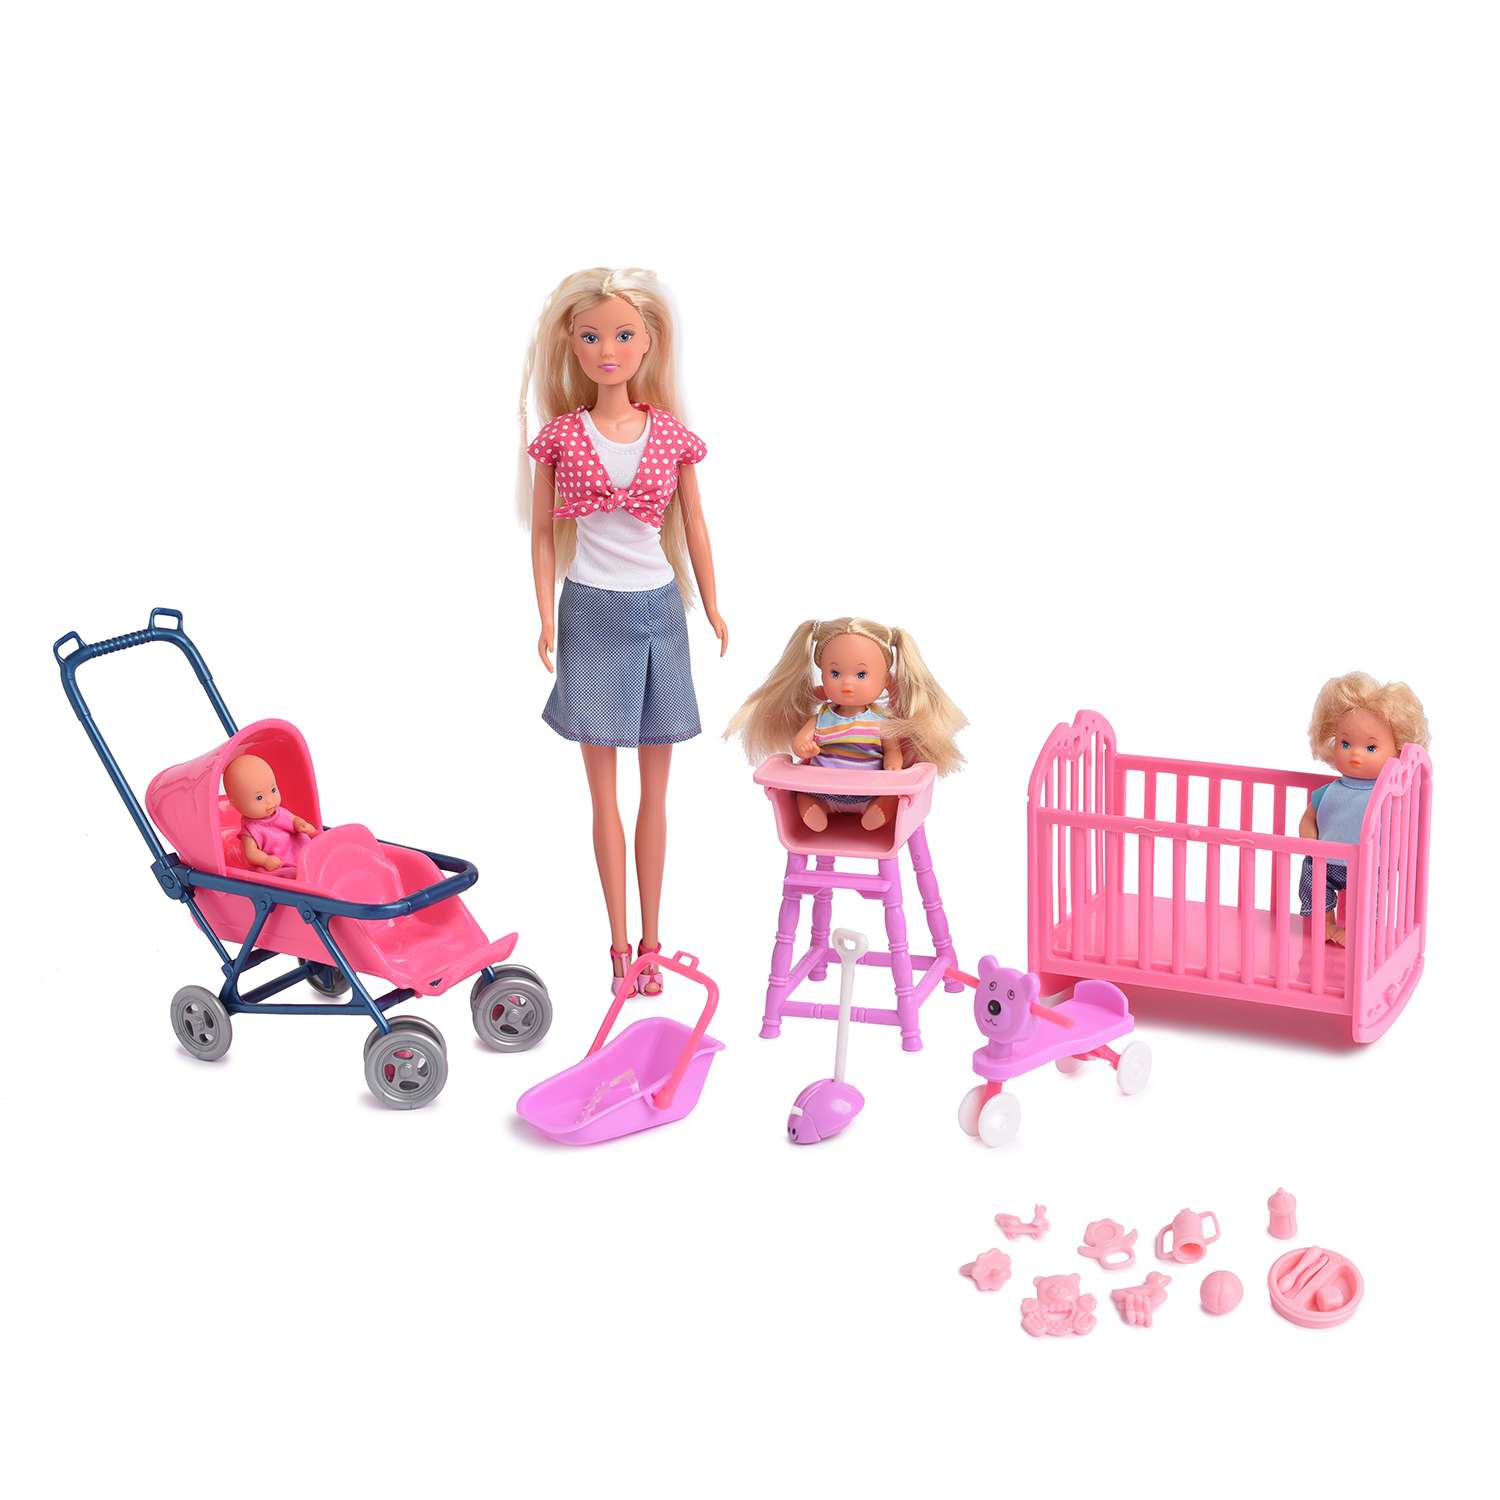 Кукла STEFFI Штеффи с детьми и принадлежностями 5736350 - фото 1